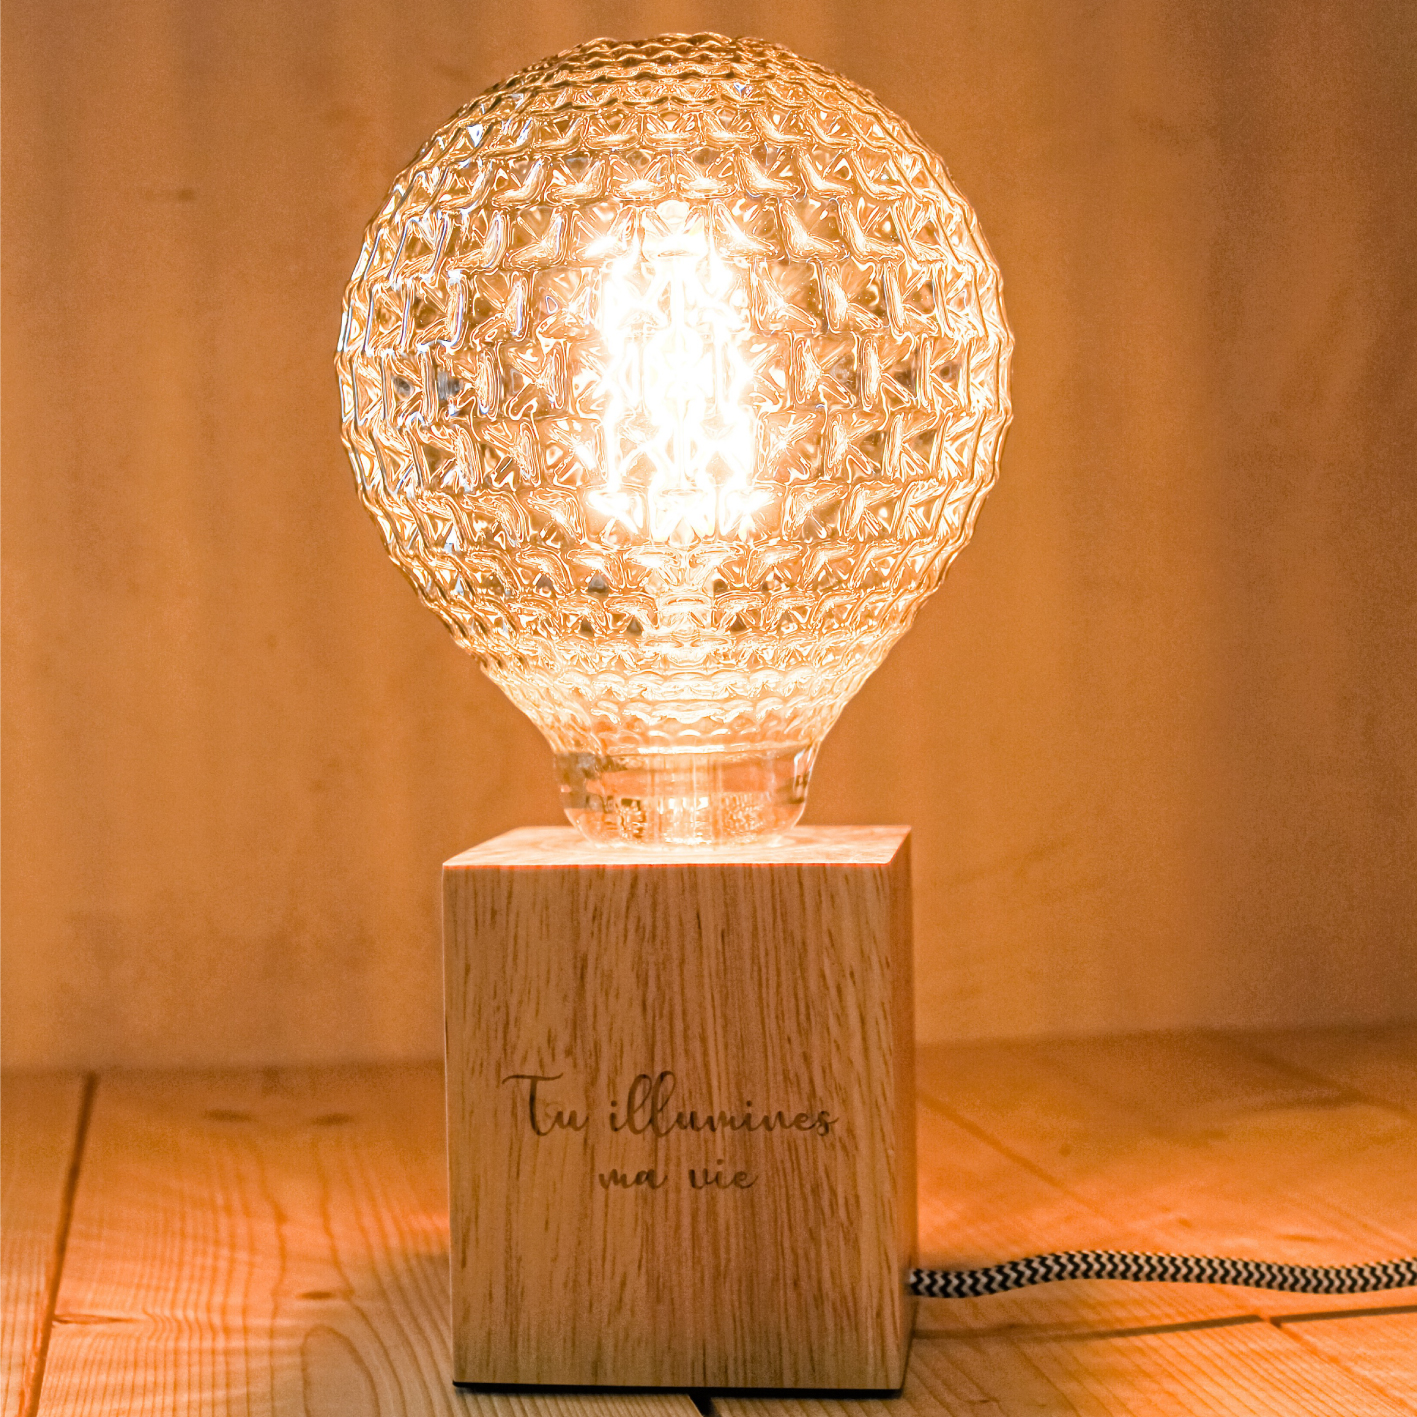 Lampe en bois personnalisée en gravure laser